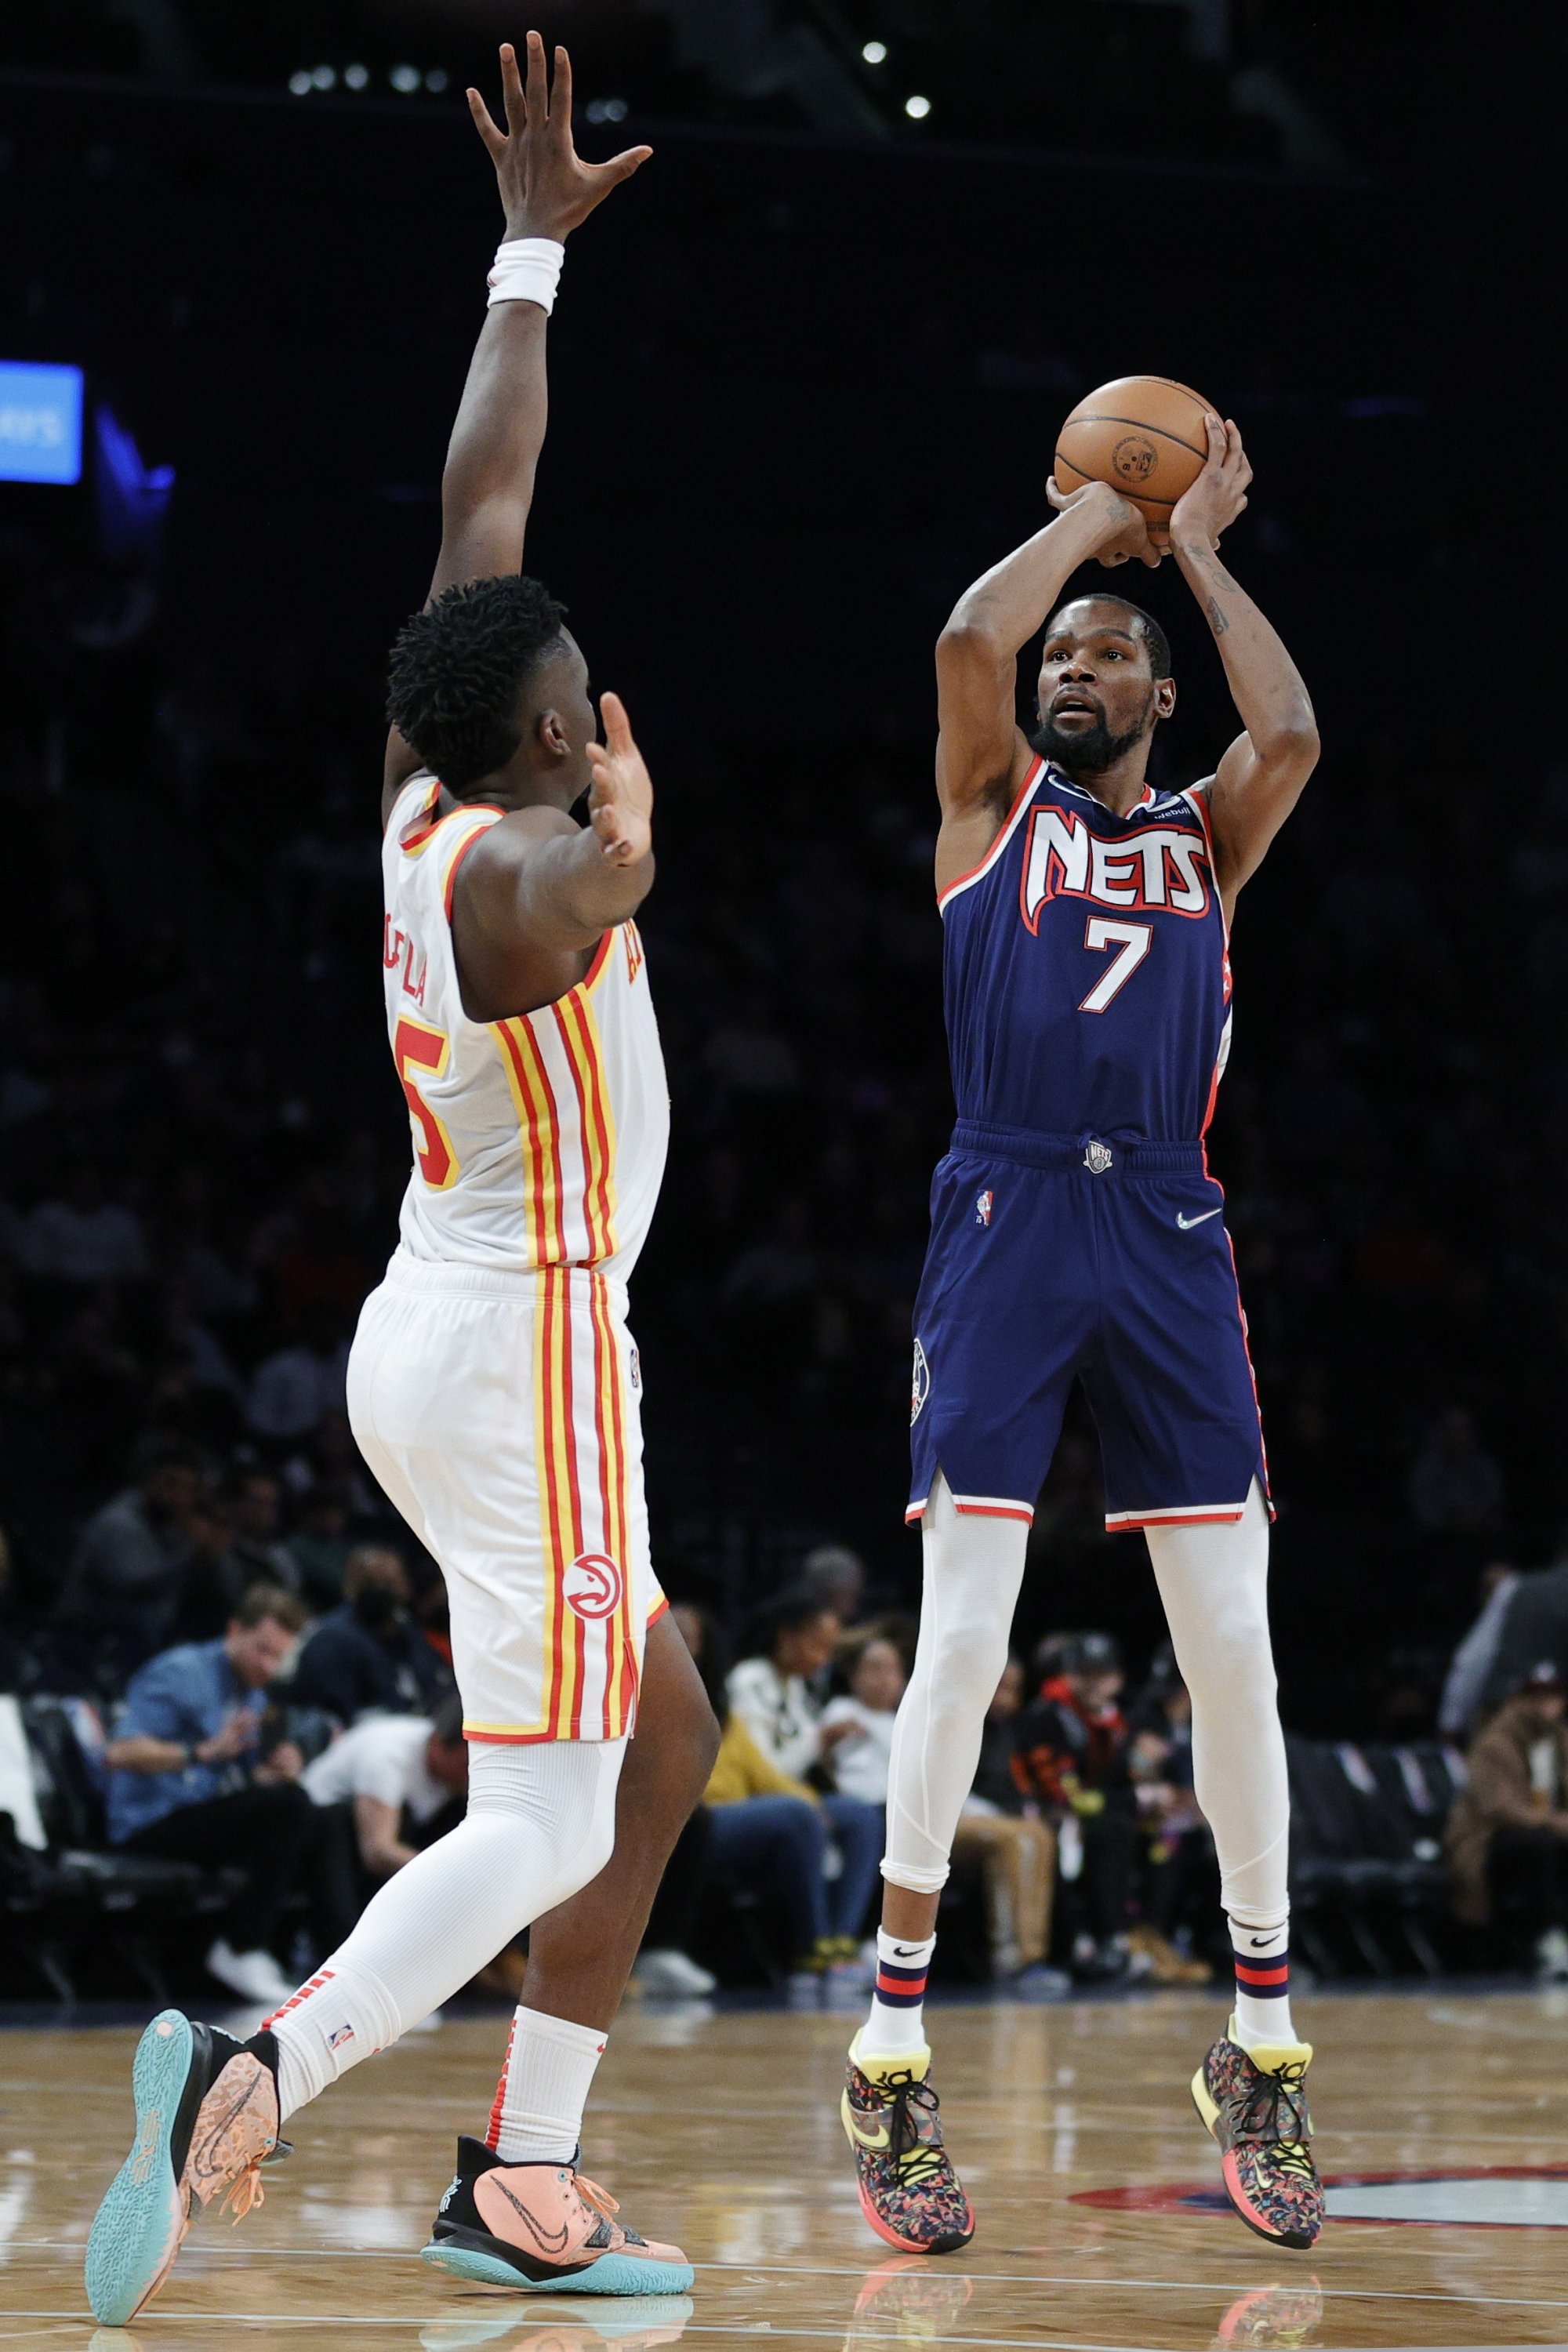 Kevin Durant (kanan) dari Brooklyn Nets menembak bola saat Clint Capela dari Atlanta Hawks bertahan selama pertandingan NBA di Barclays Center, New York, AS, 03 November 2021. (AFP Photo)